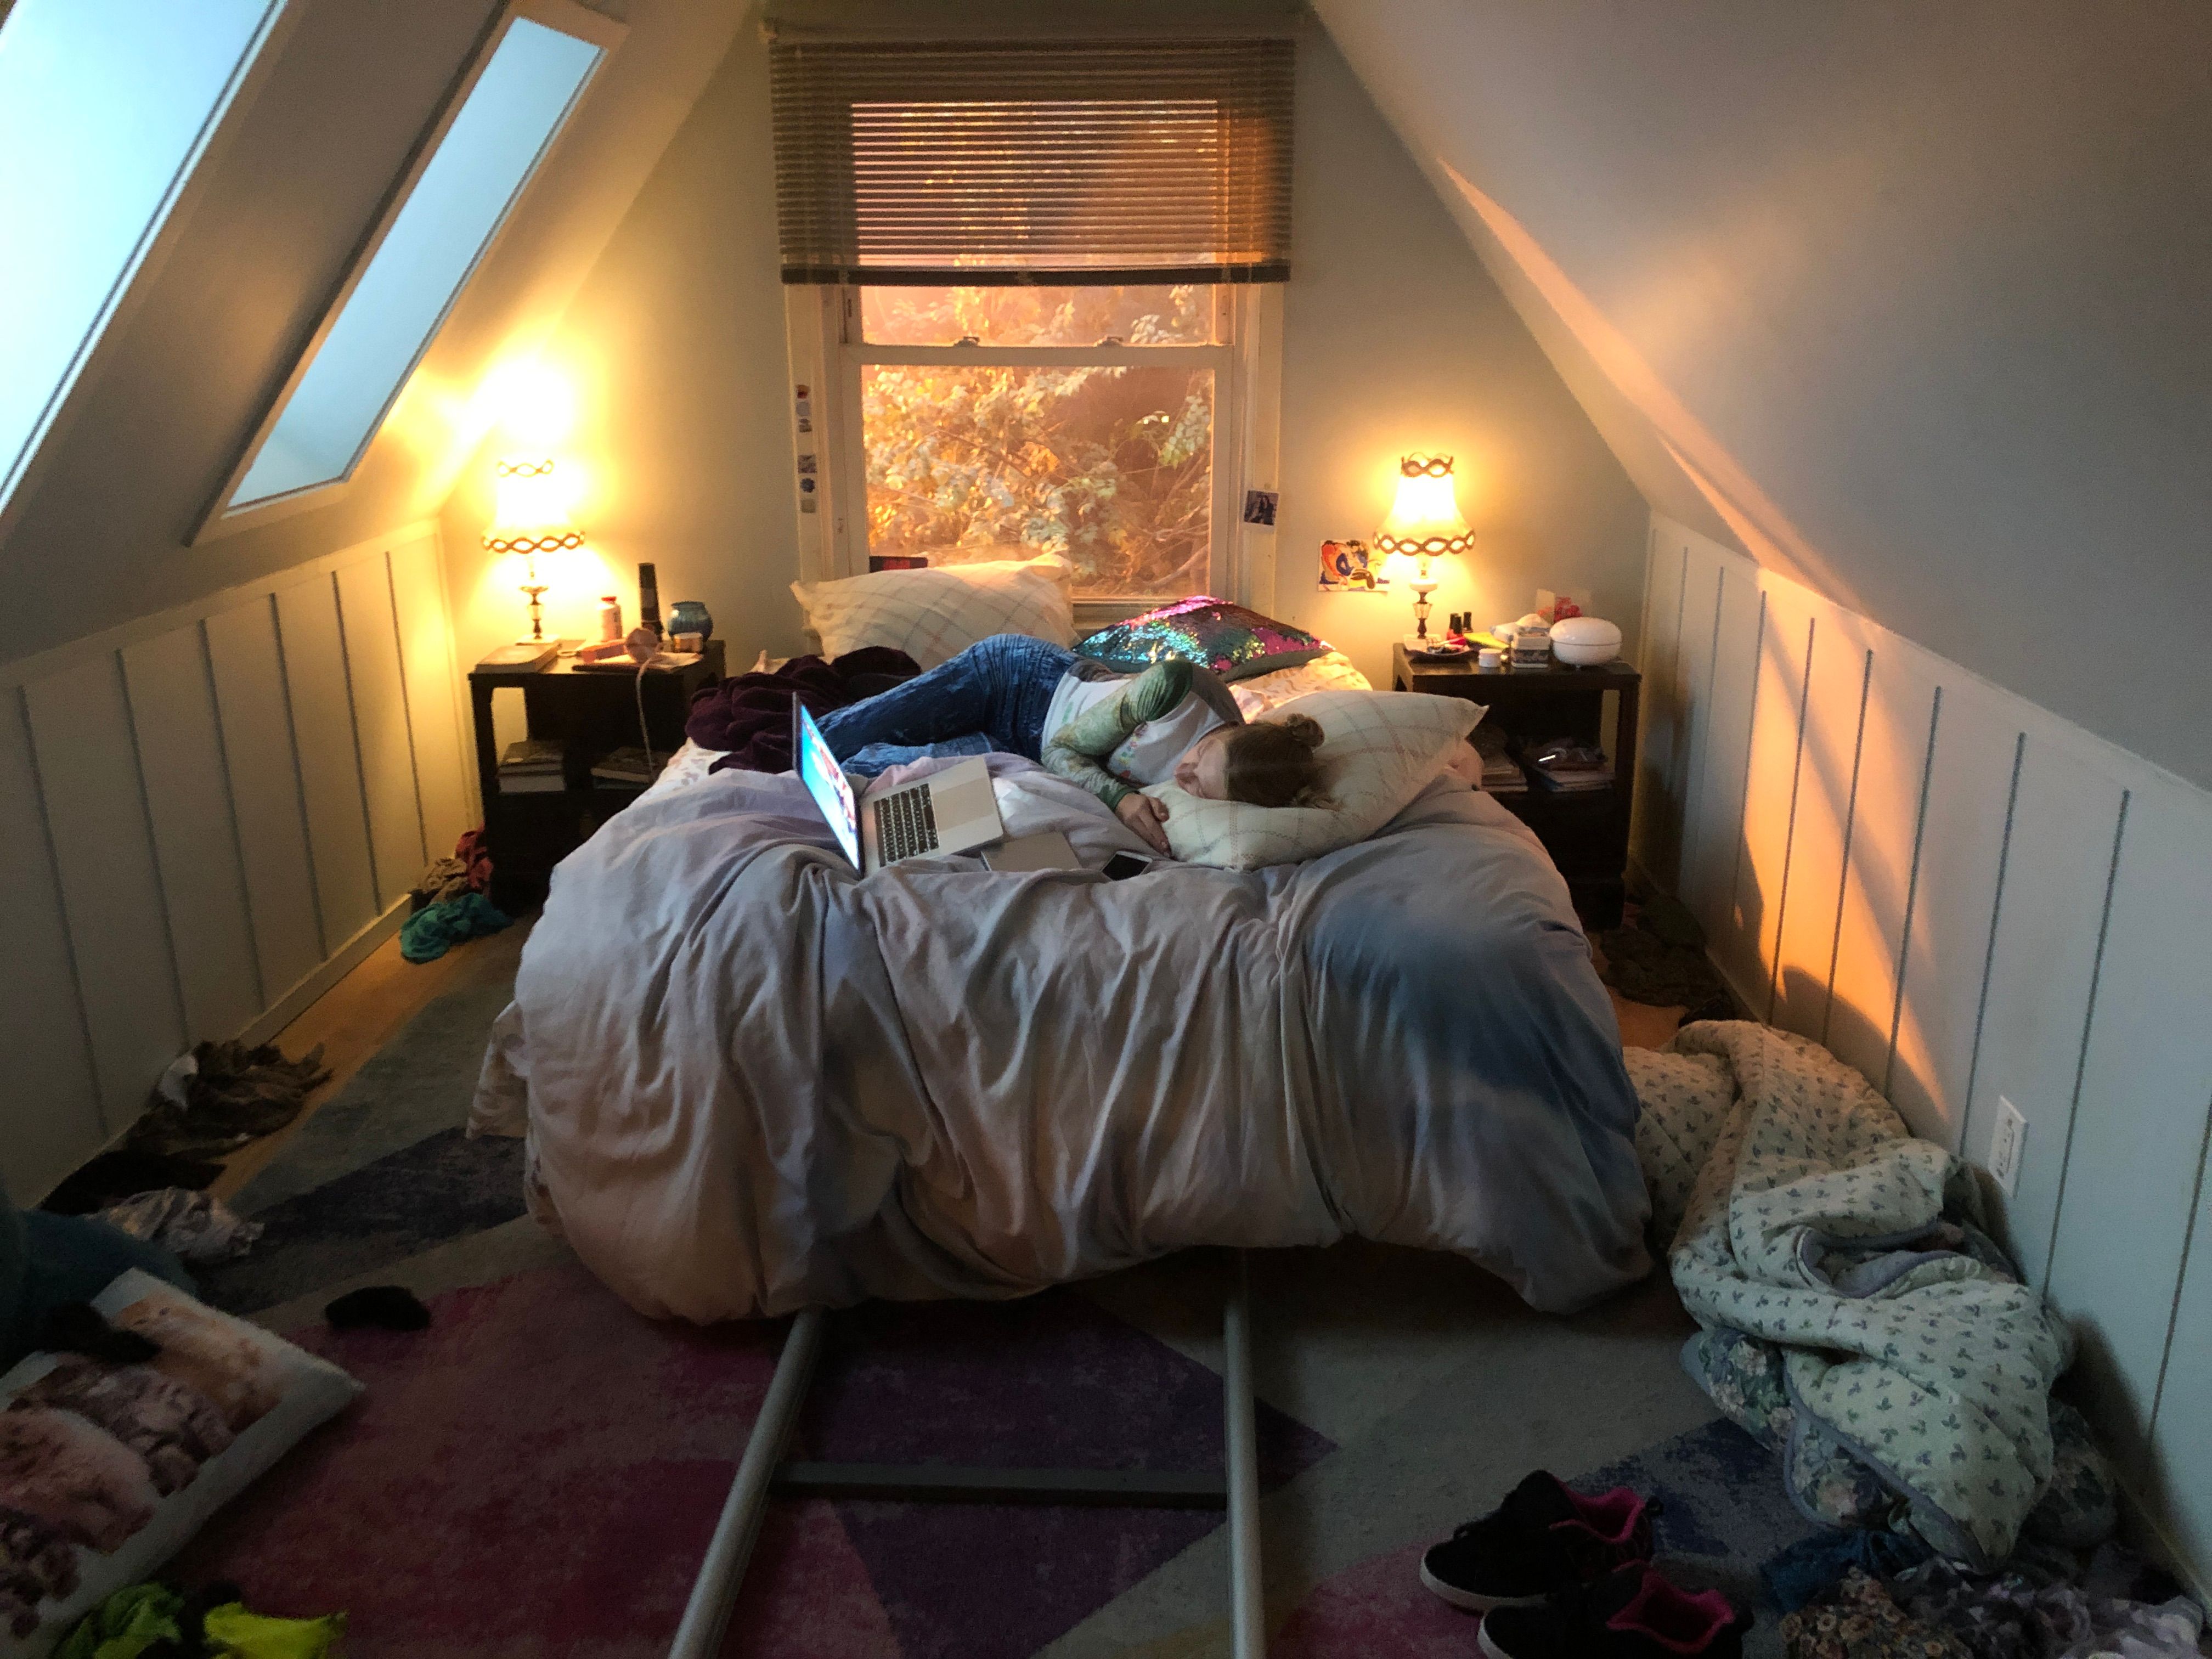 jules bedroom in euphoria hbo 